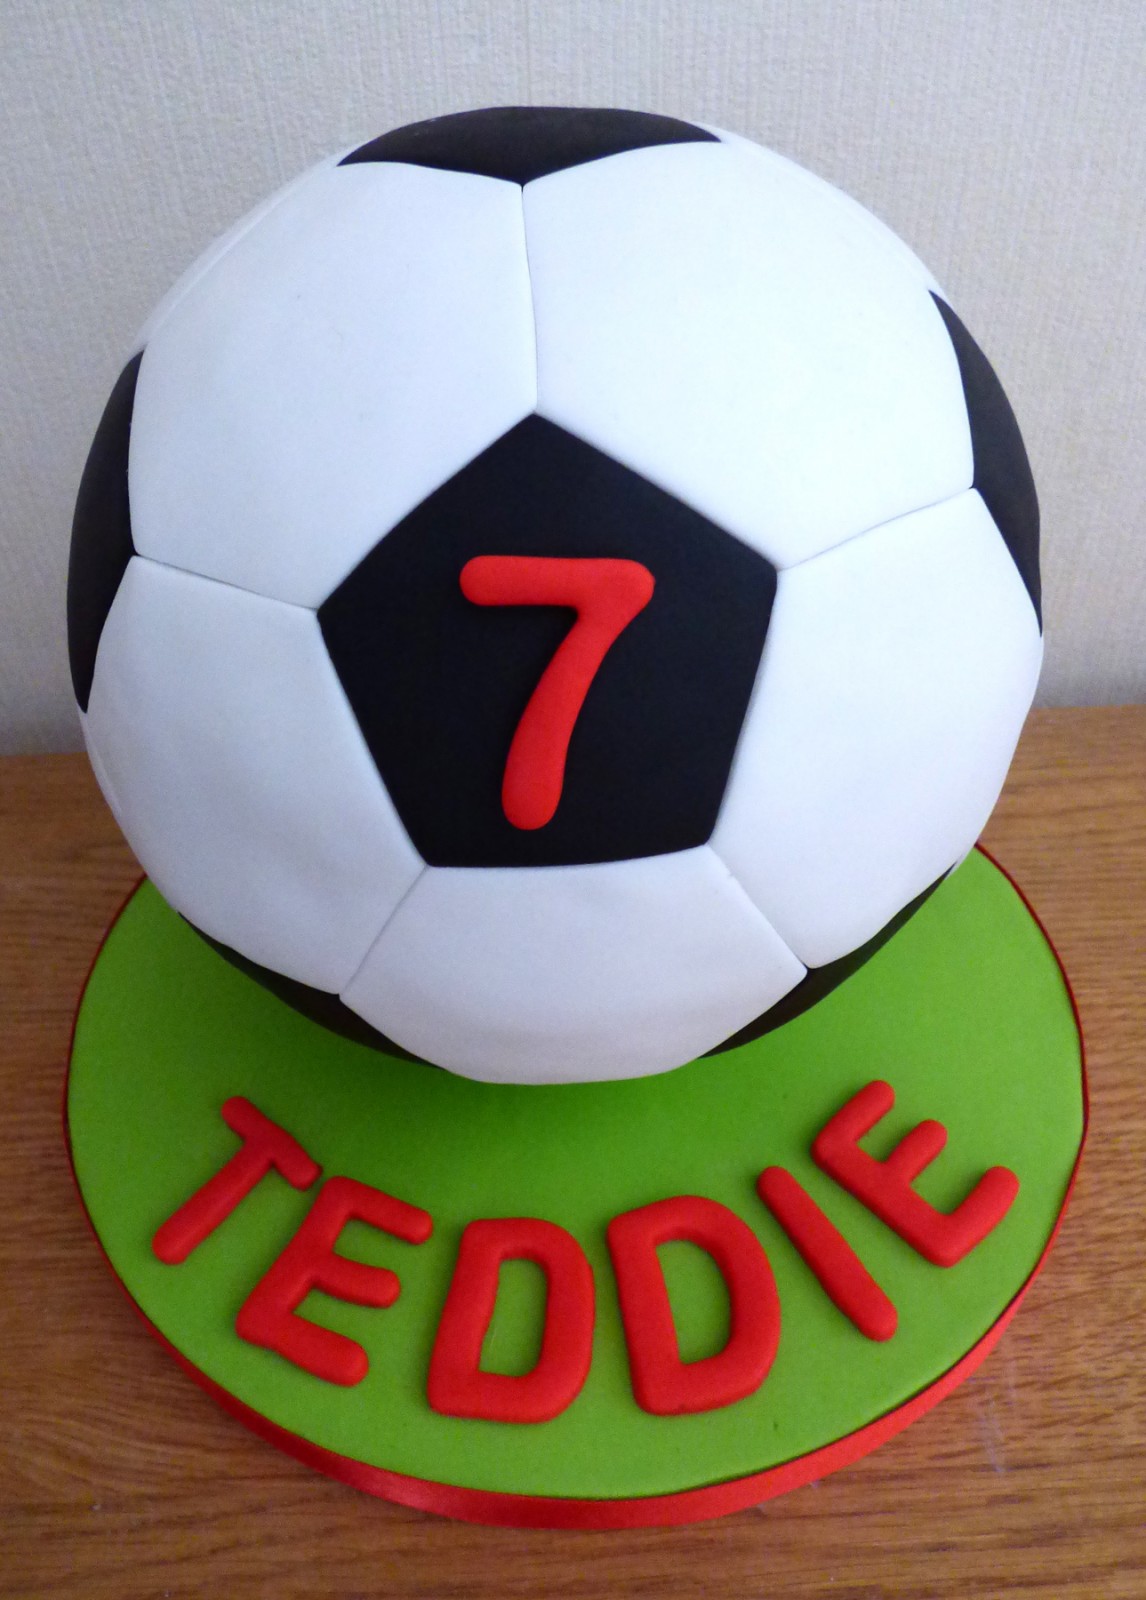 Football Theme Cake Online | Order Football Cake for Birthday